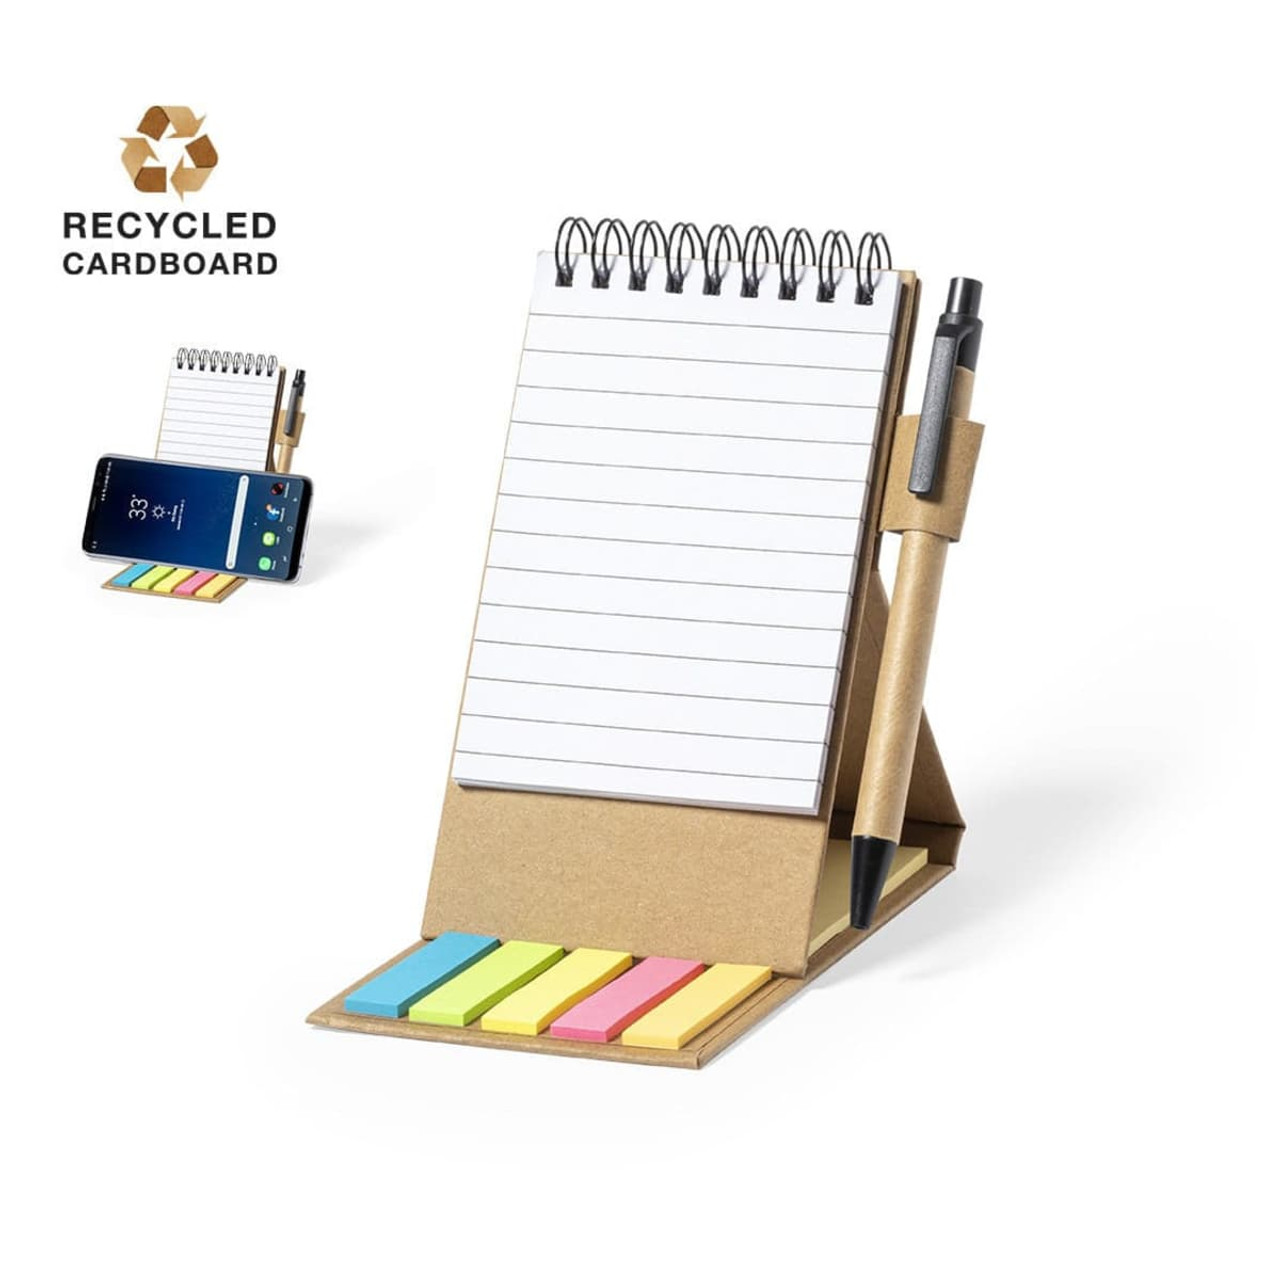 Recycle a Phone Book into a Pen Organizer